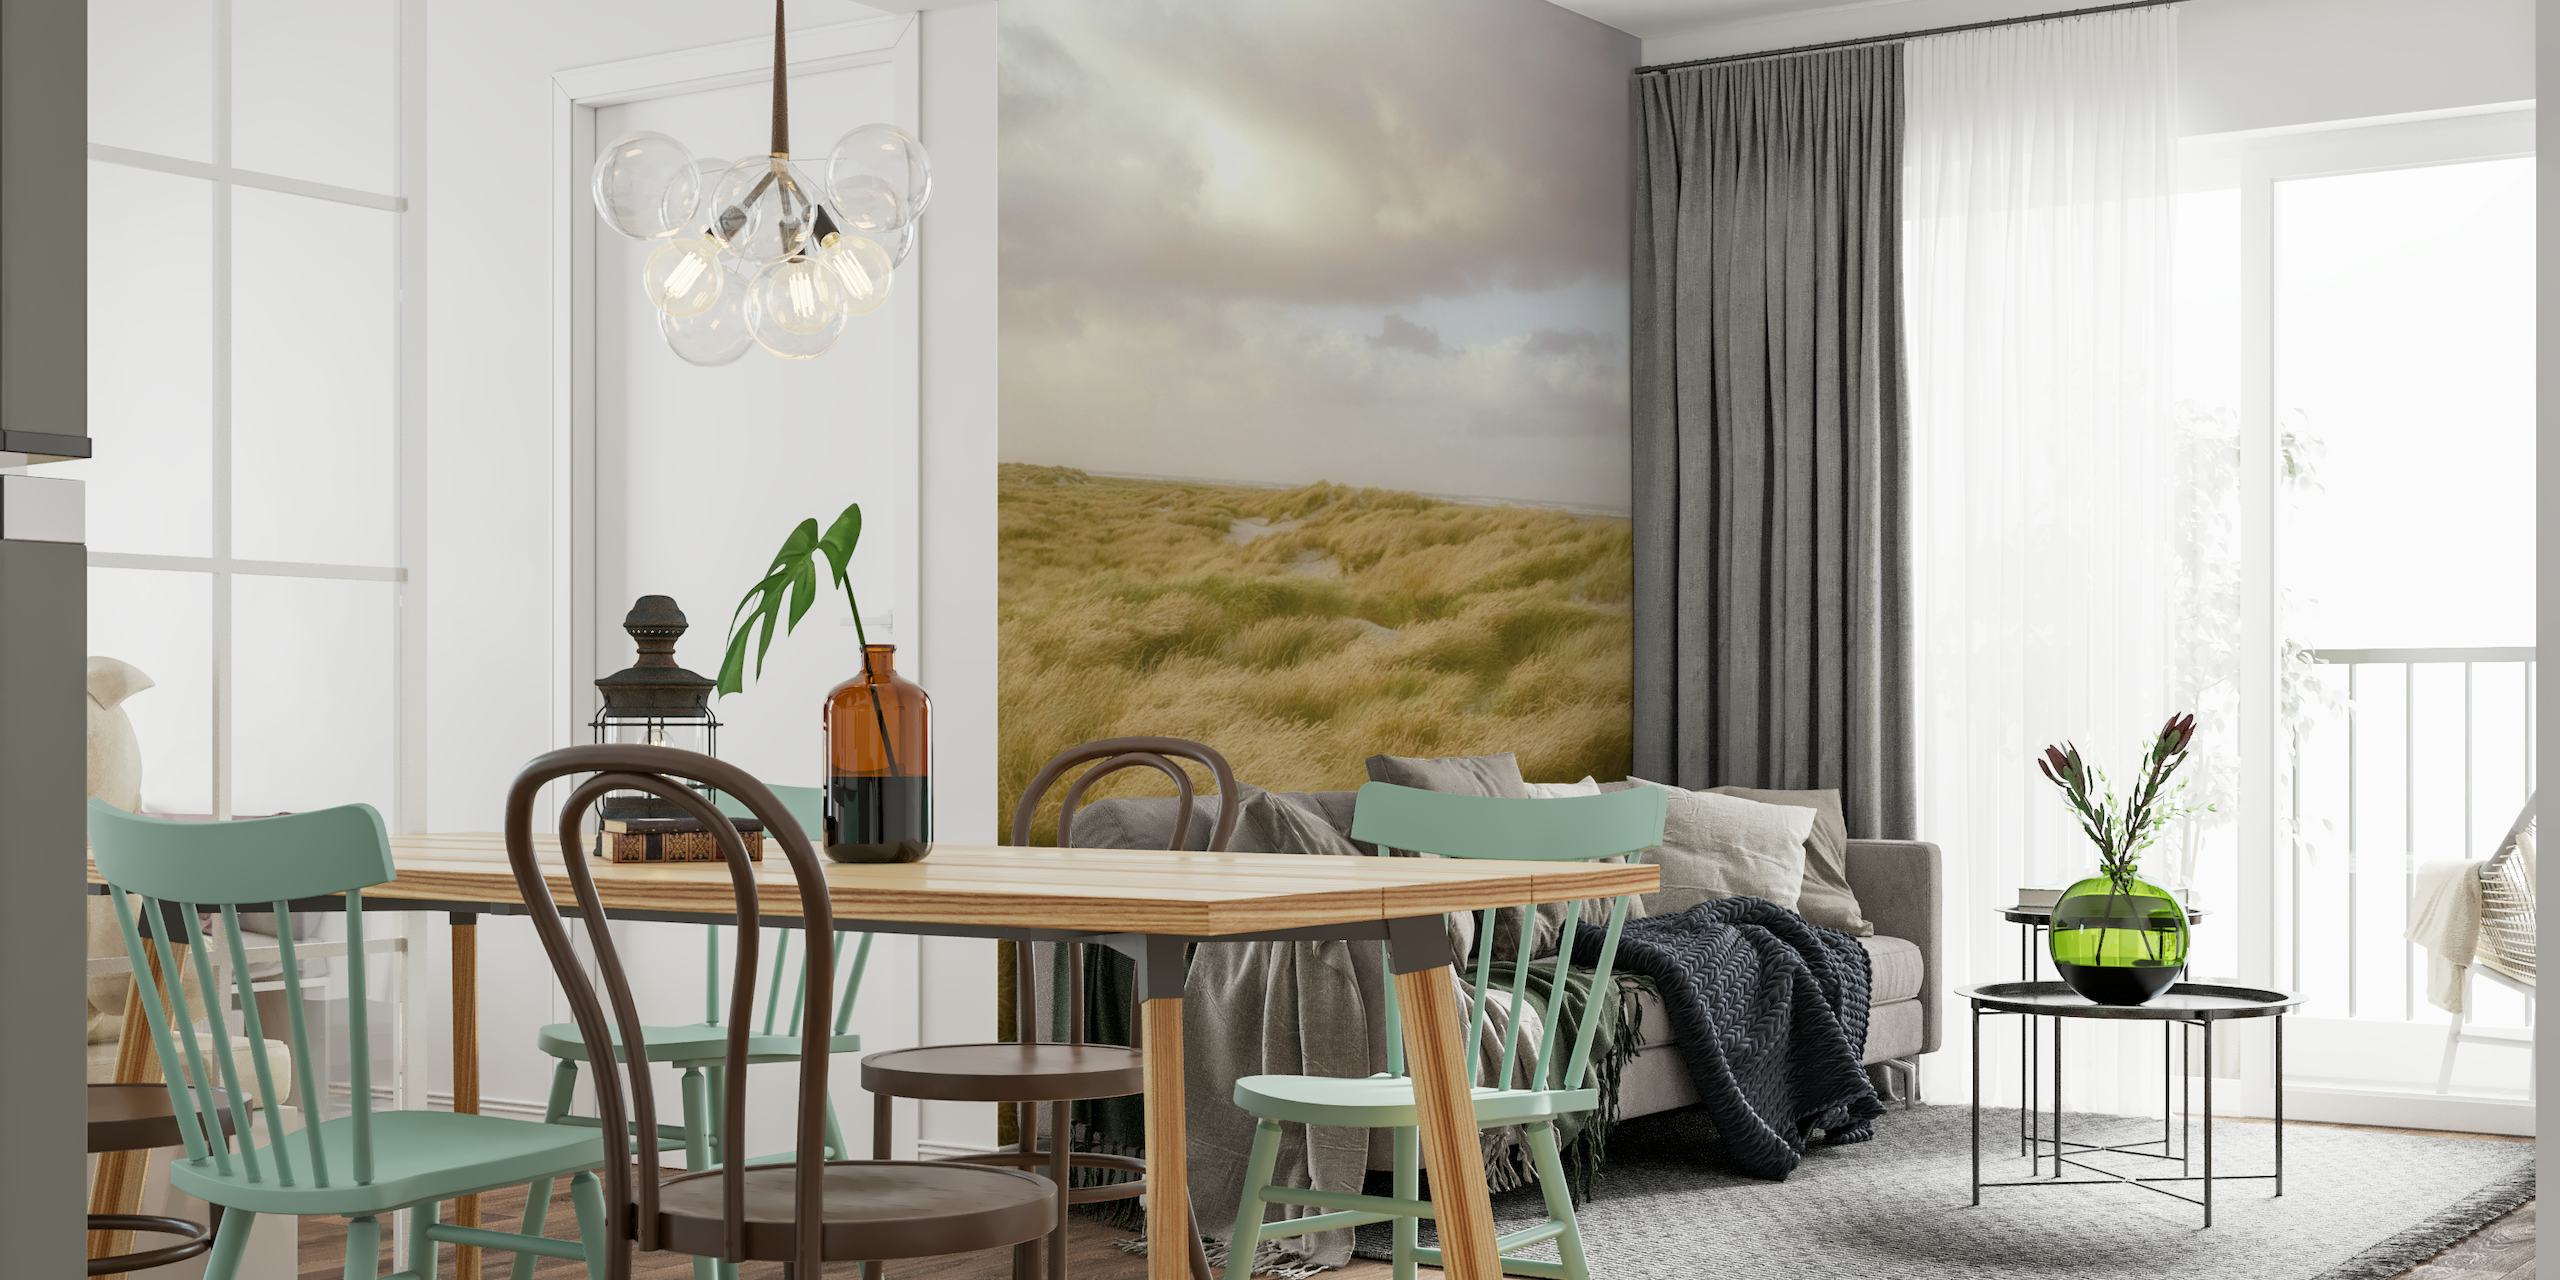 Fototapet som föreställer Skagens fridfulla sanddyner med böljande marramgräs under en mulen himmel.